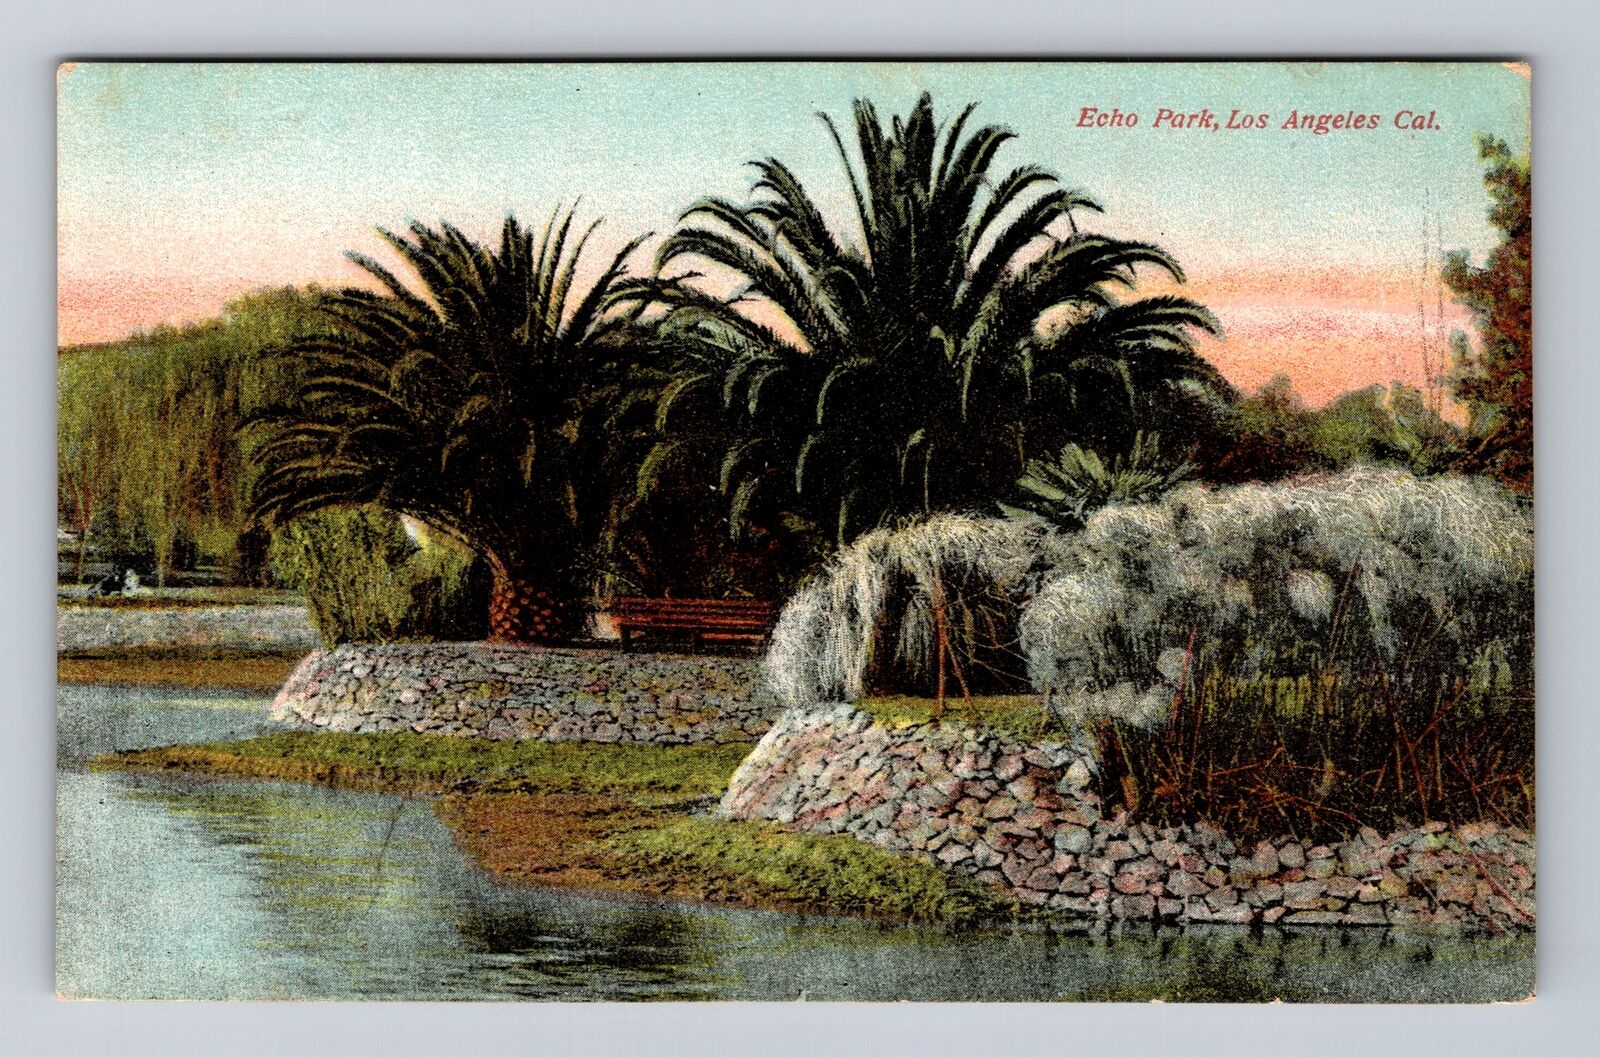 Los Angeles CA-California, Echo Park, Antique, Vintage Postcard